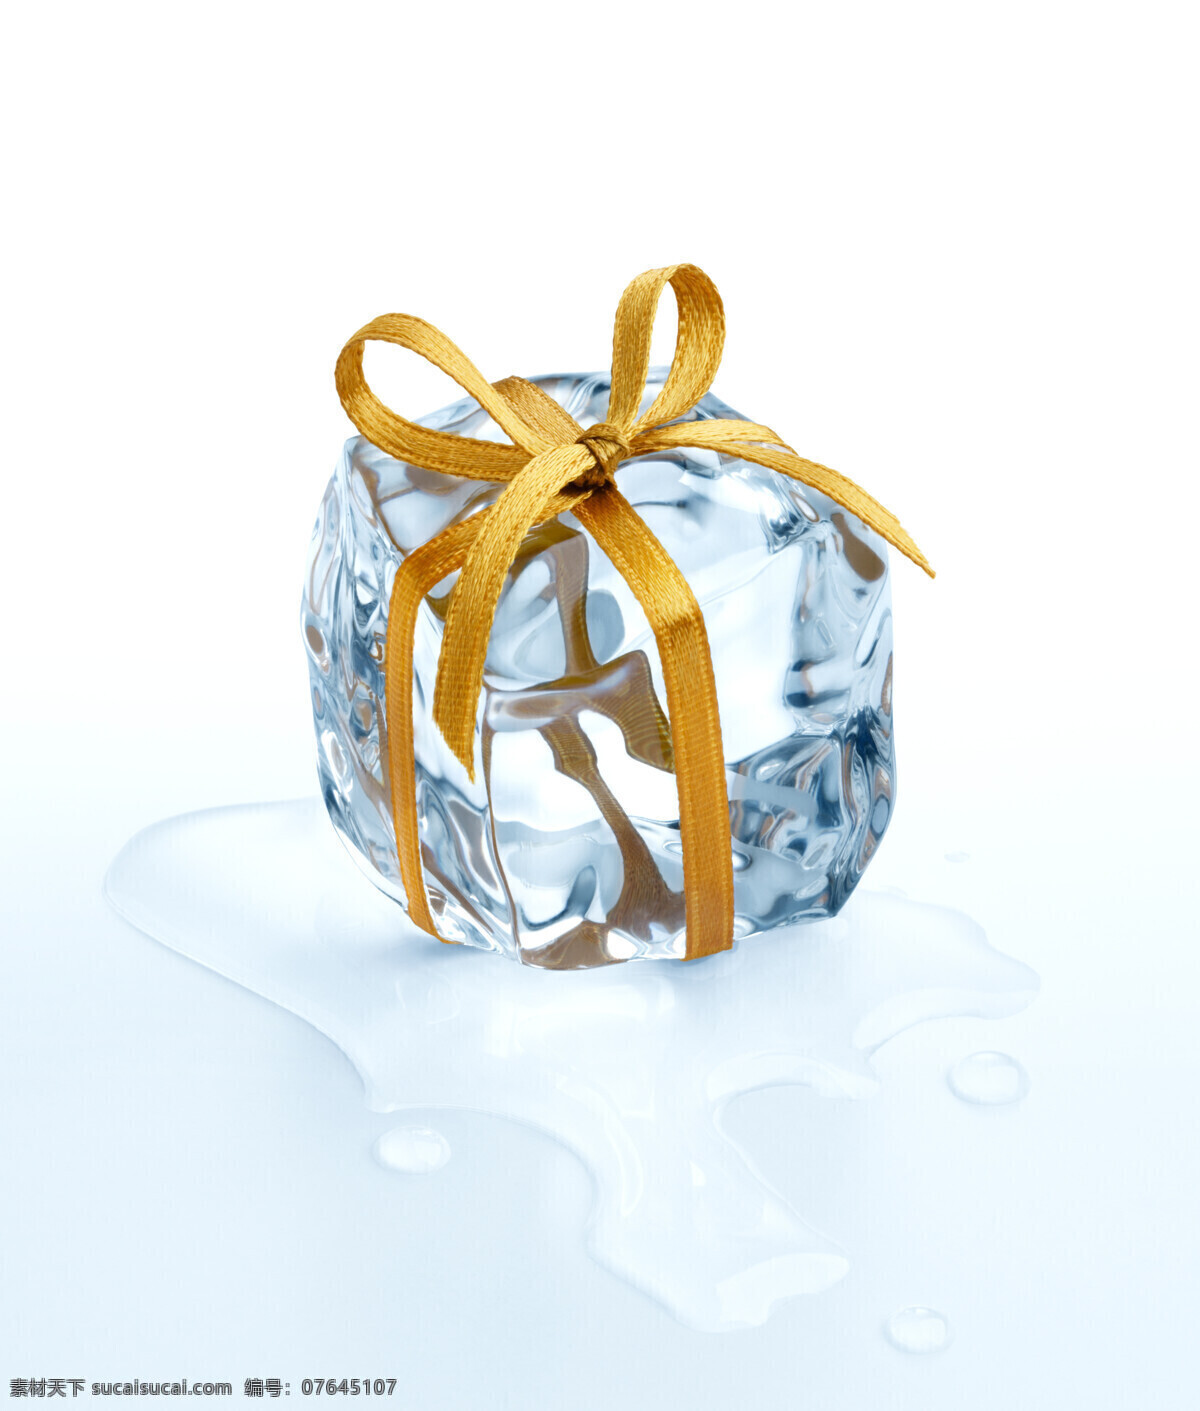 冰块 礼包 冰 冰块设计 水 水珠 水滴 创意礼包 冰块摄影 摄影图库 酒类图片 餐饮美食